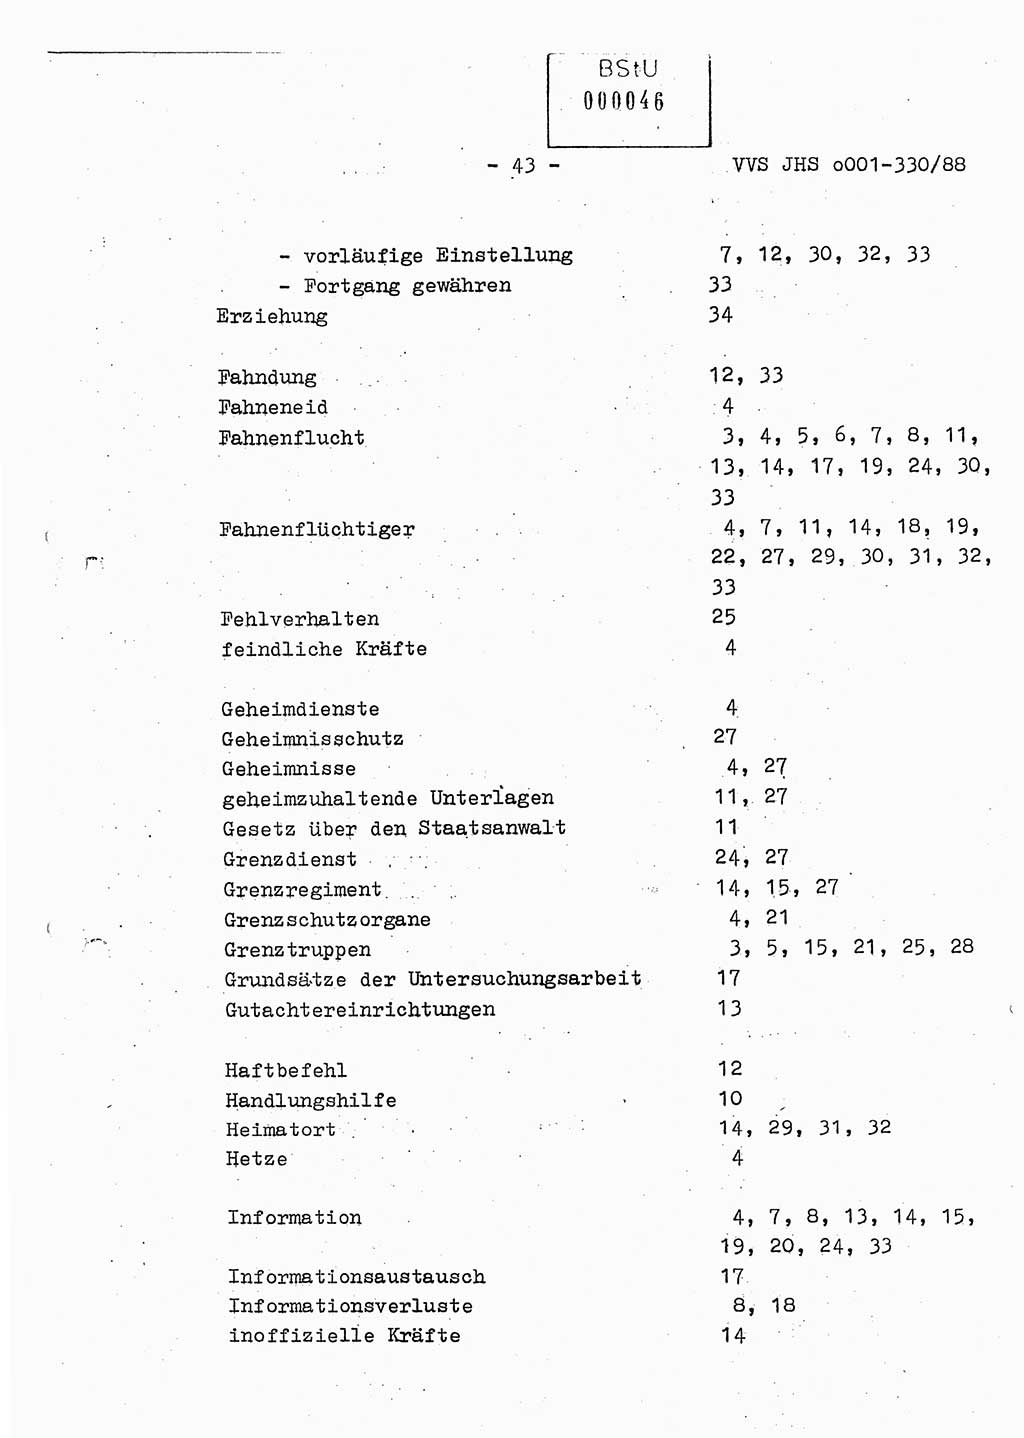 Diplomarbeit Offiziersschüler Thomas Mühle (HA Ⅸ/6), Ministerium für Staatssicherheit (MfS) [Deutsche Demokratische Republik (DDR)], Juristische Hochschule (JHS), Vertrauliche Verschlußsache (VVS) o001-330/88, Potsdam 1988, Seite 43 (Dipl.-Arb. MfS DDR JHS VVS o001-330/88 1988, S. 43)